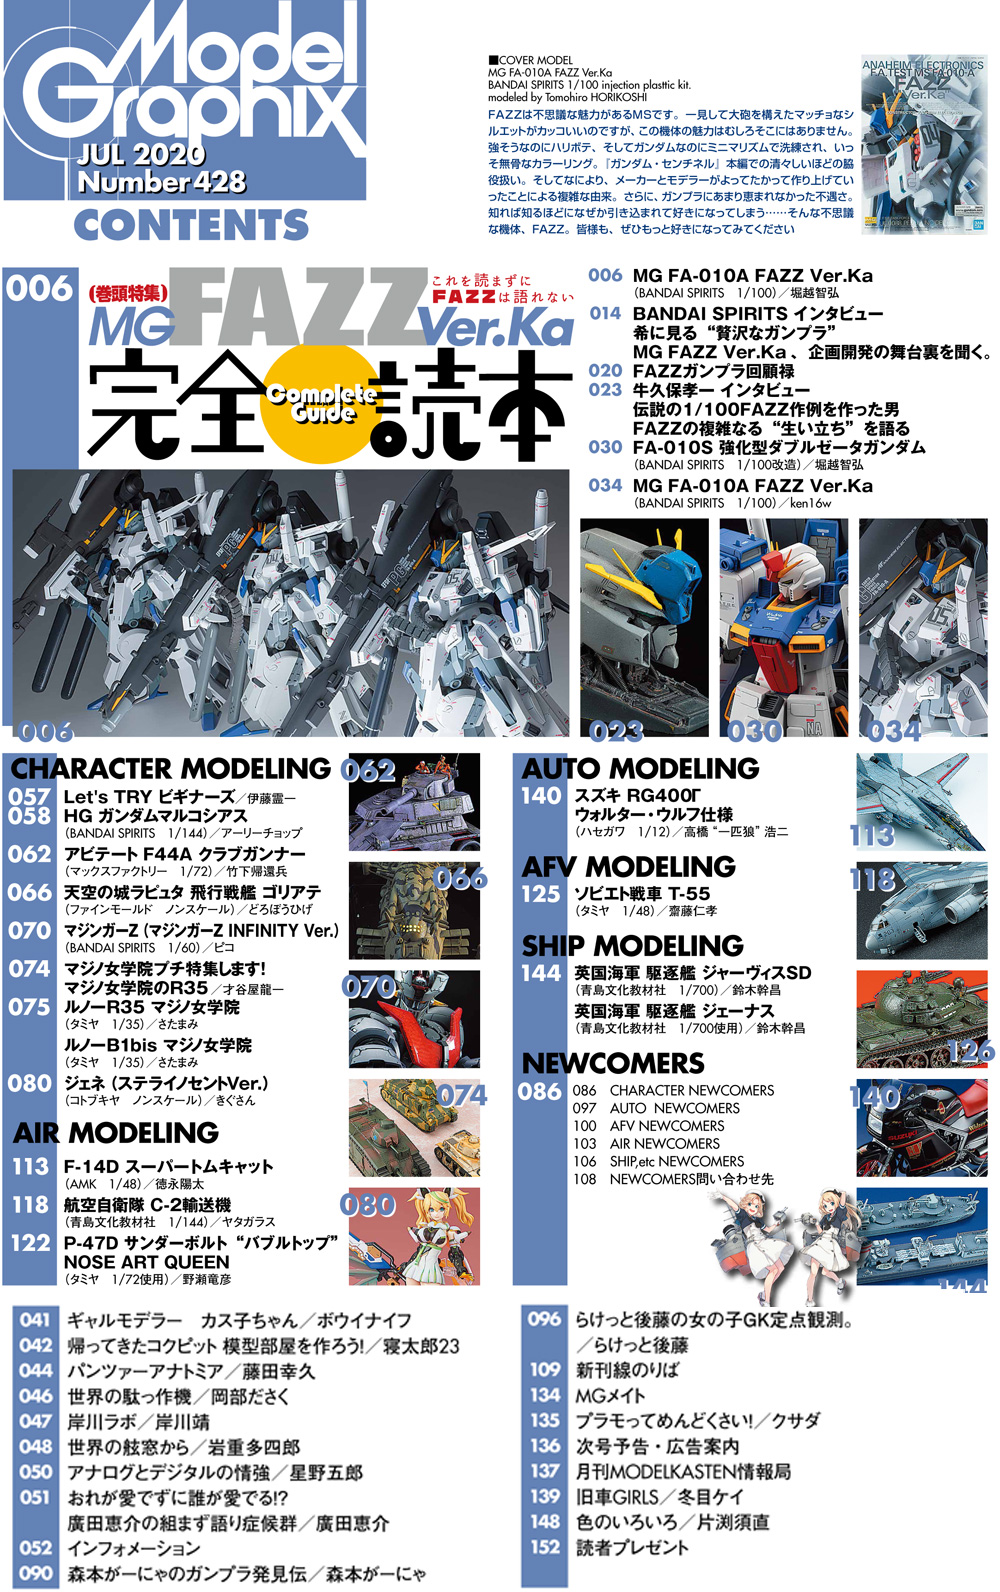 モデルグラフィックス 2020年7月号 雑誌 (大日本絵画 月刊 モデルグラフィックス No.428) 商品画像_1